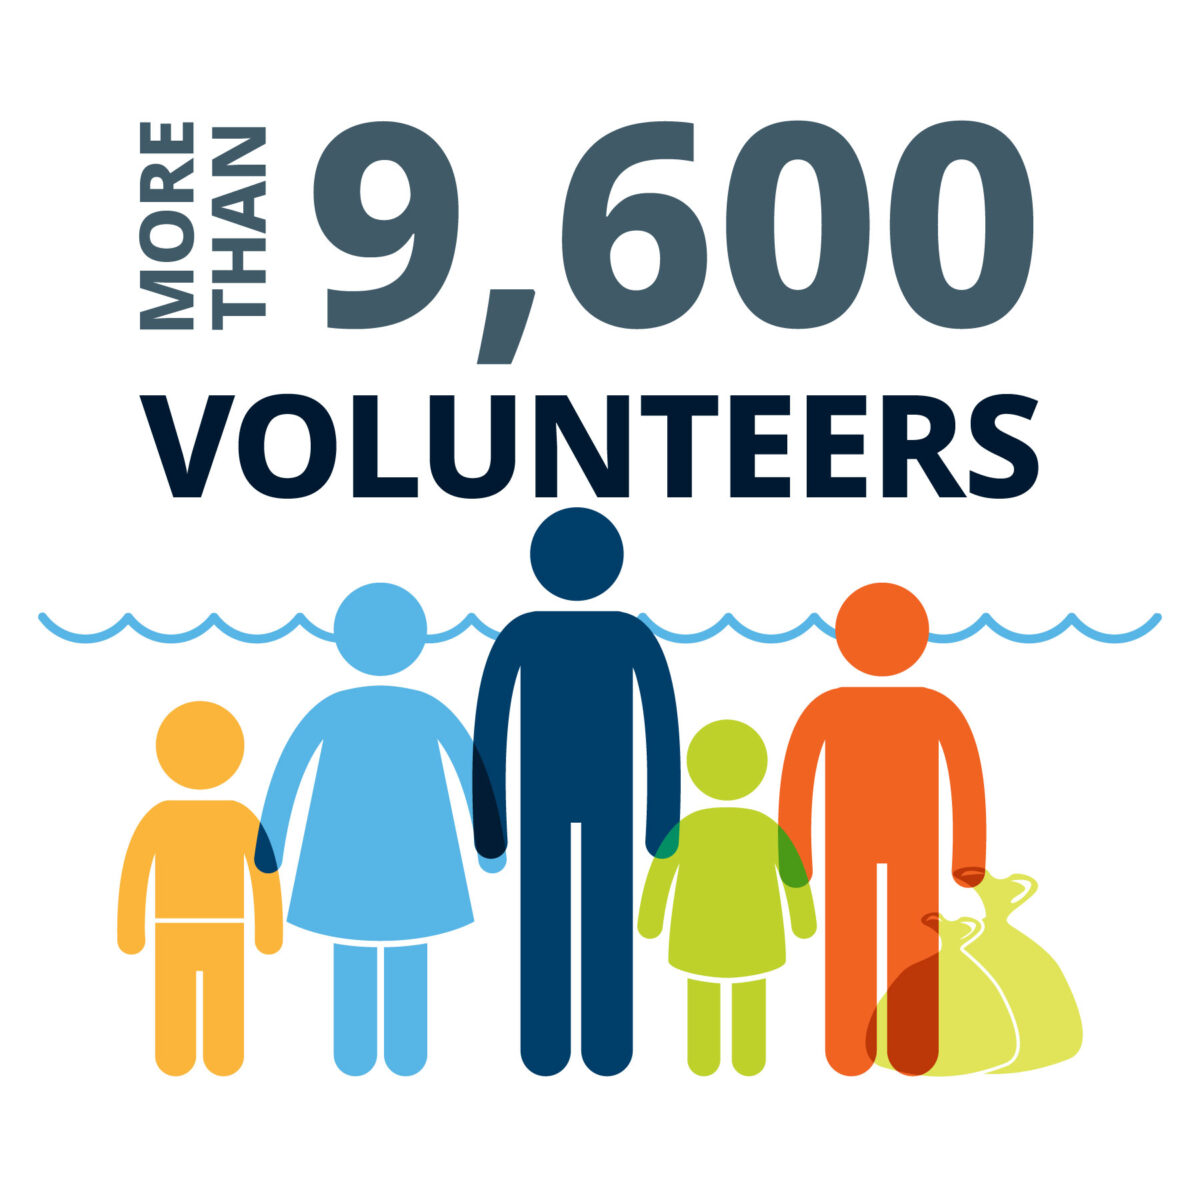 More than 9,600 volunteers.